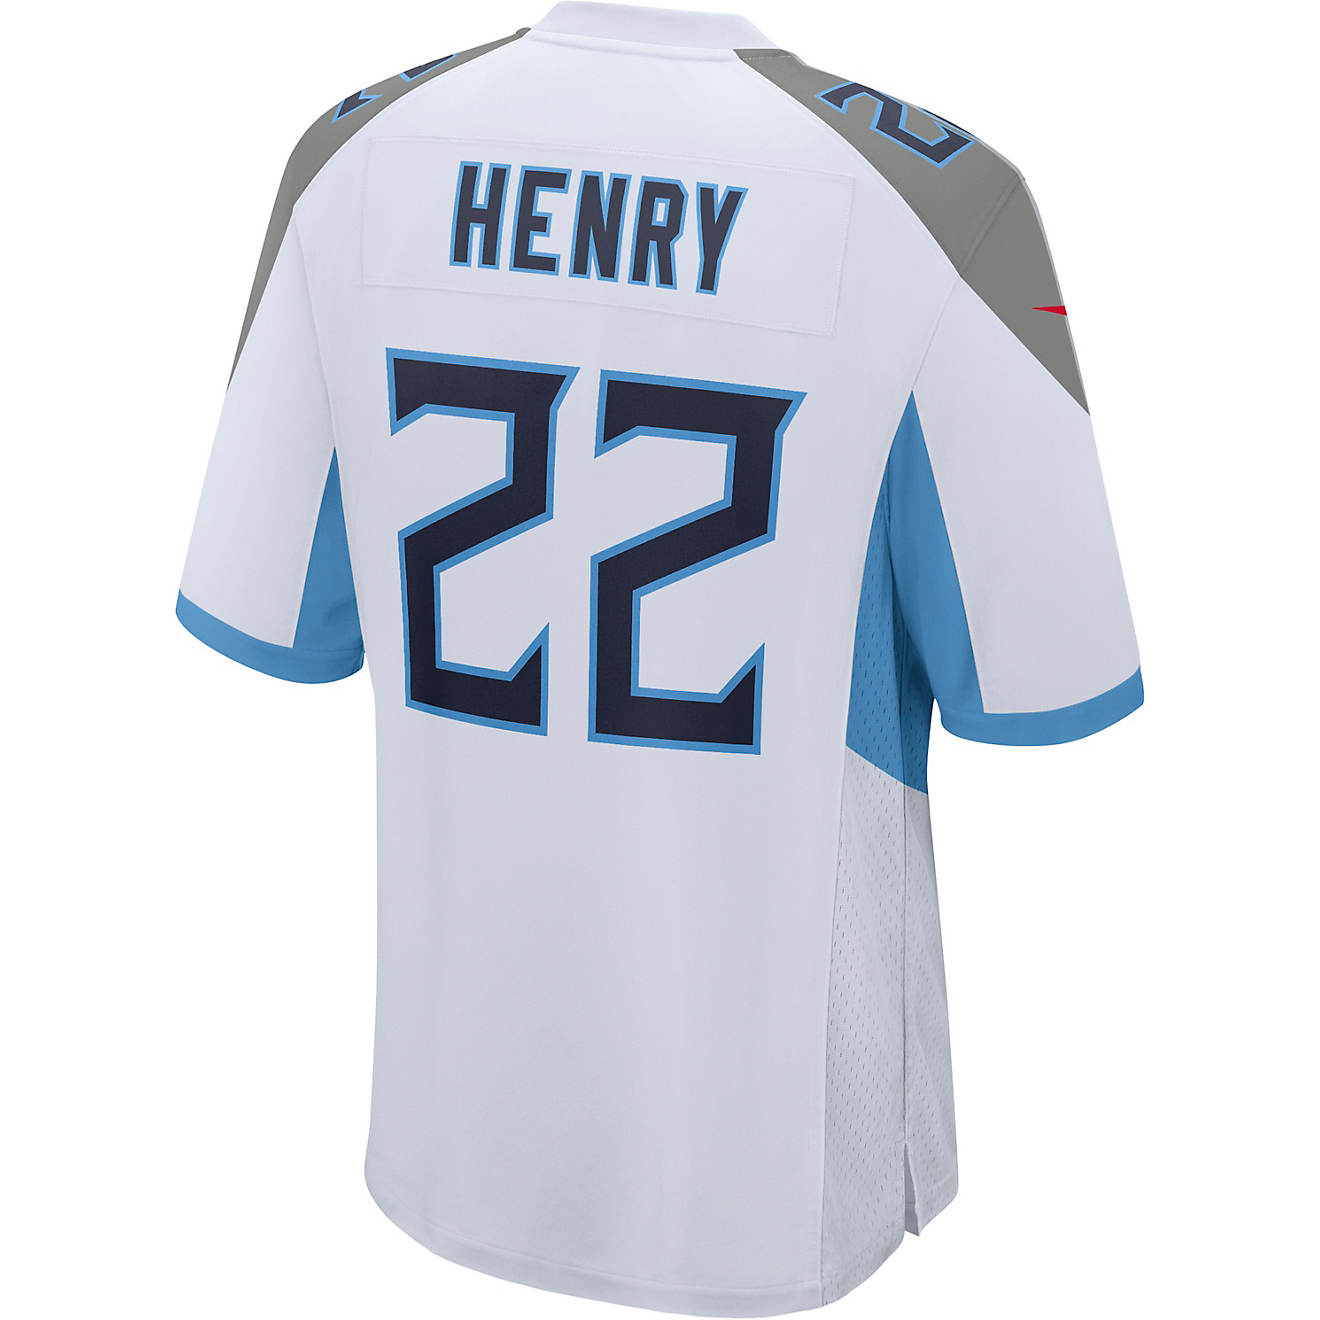 Parque jurásico traicionar consumirse Nike Men's Tennessee Titans Derrick Henry Road Jersey | Academy